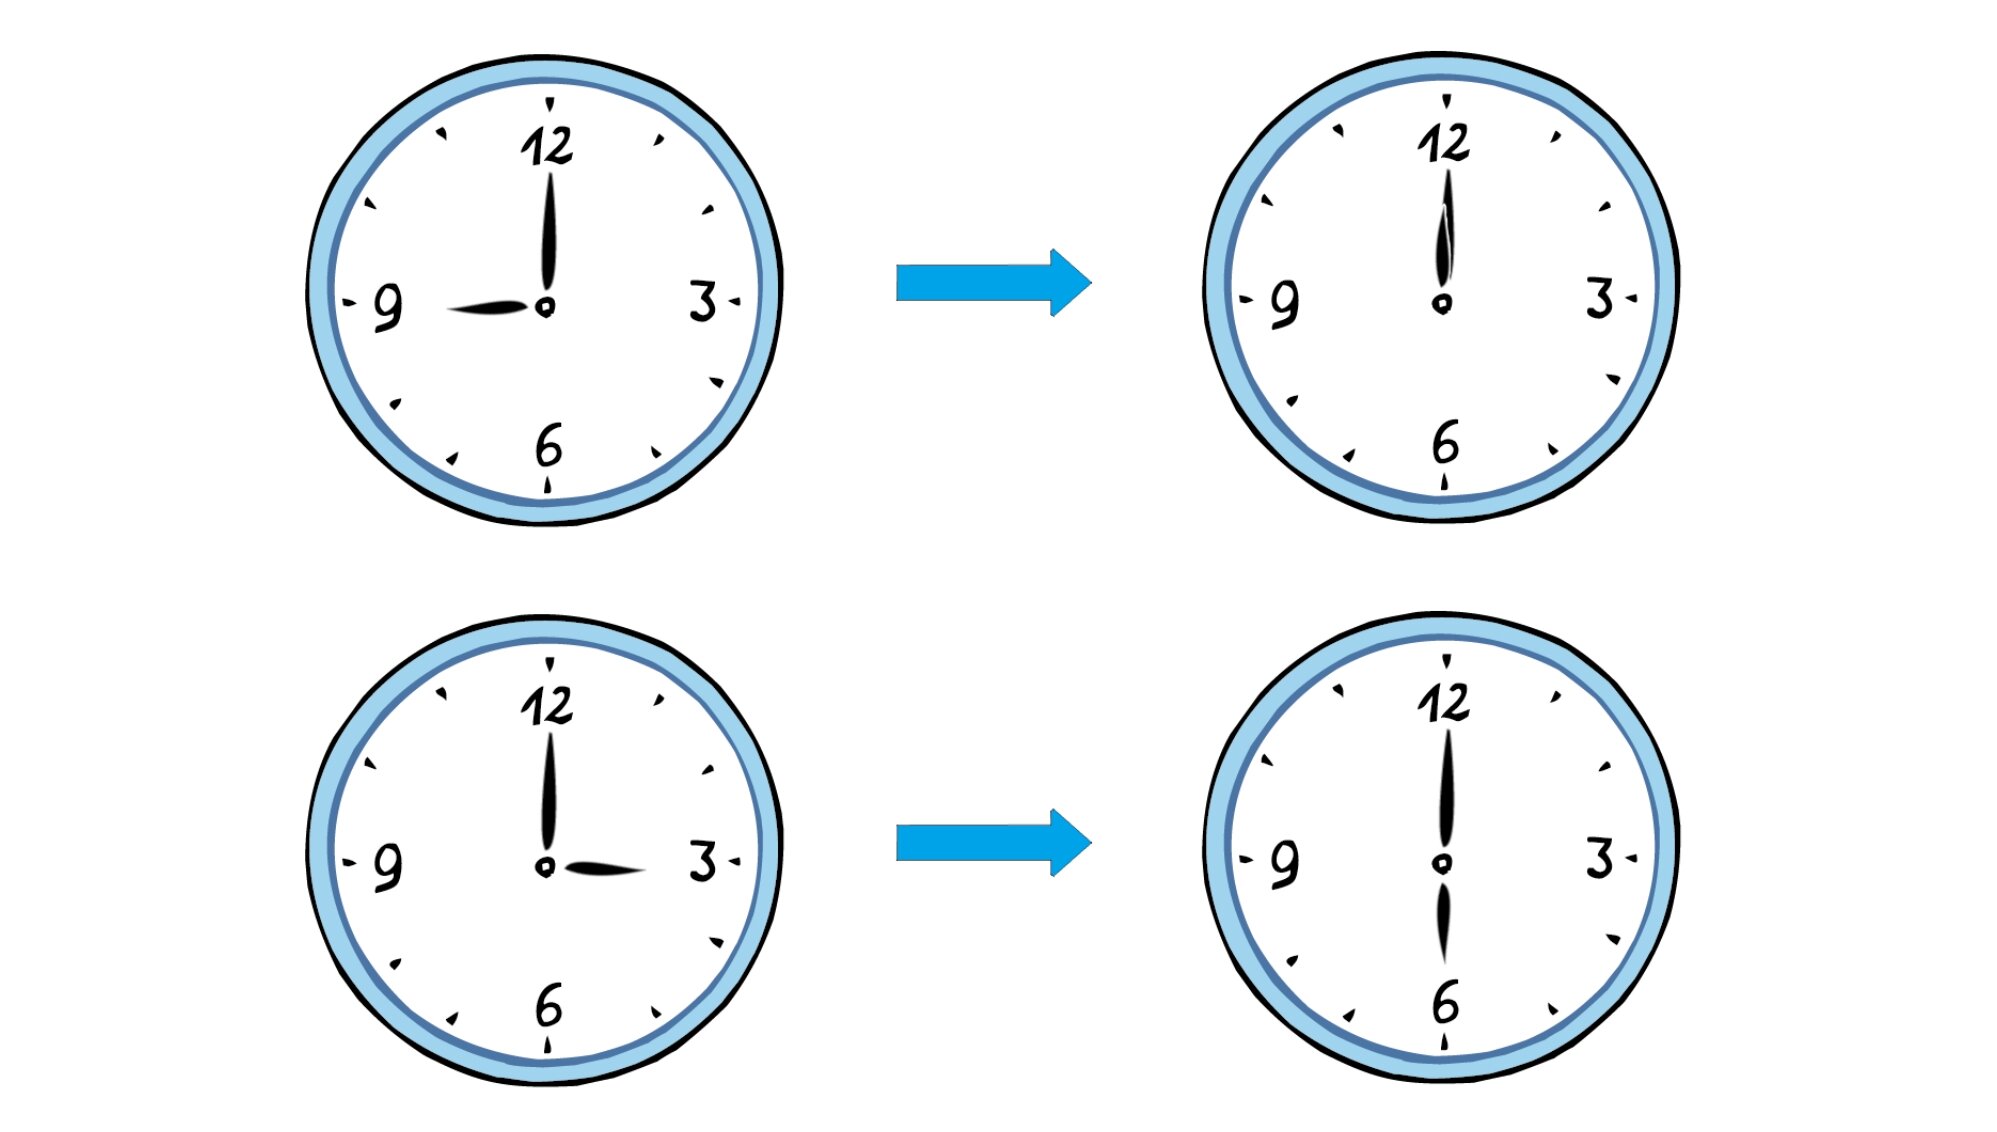 Grafik: verschiedene Zeitangaben auf insgesamt vier Wanduhren